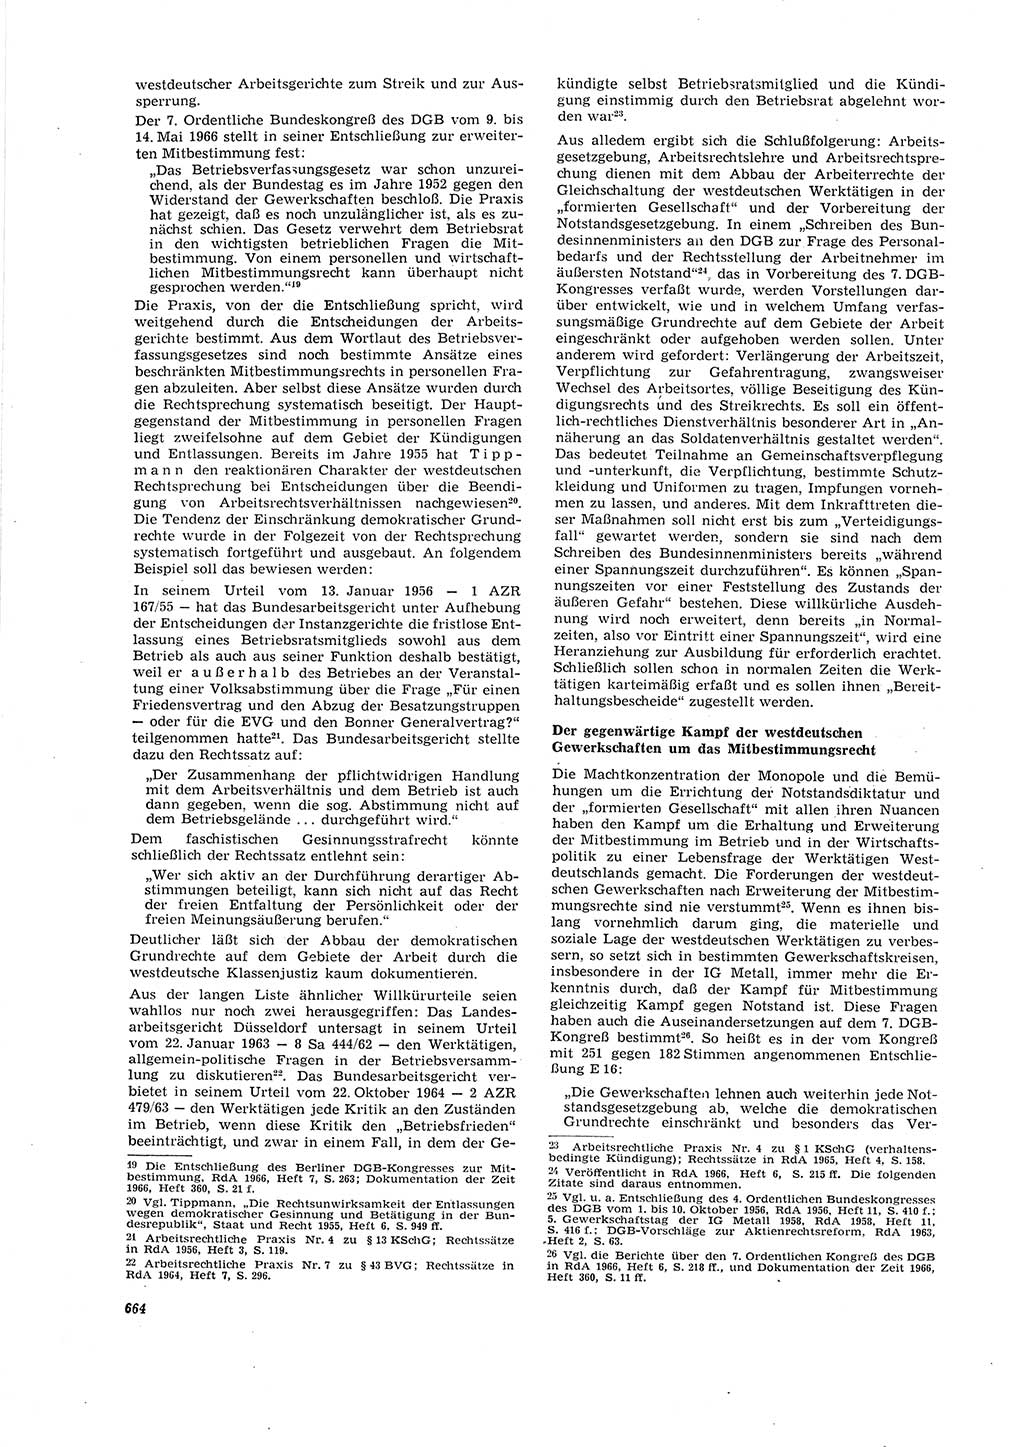 Neue Justiz (NJ), Zeitschrift für Recht und Rechtswissenschaft [Deutsche Demokratische Republik (DDR)], 20. Jahrgang 1966, Seite 664 (NJ DDR 1966, S. 664)